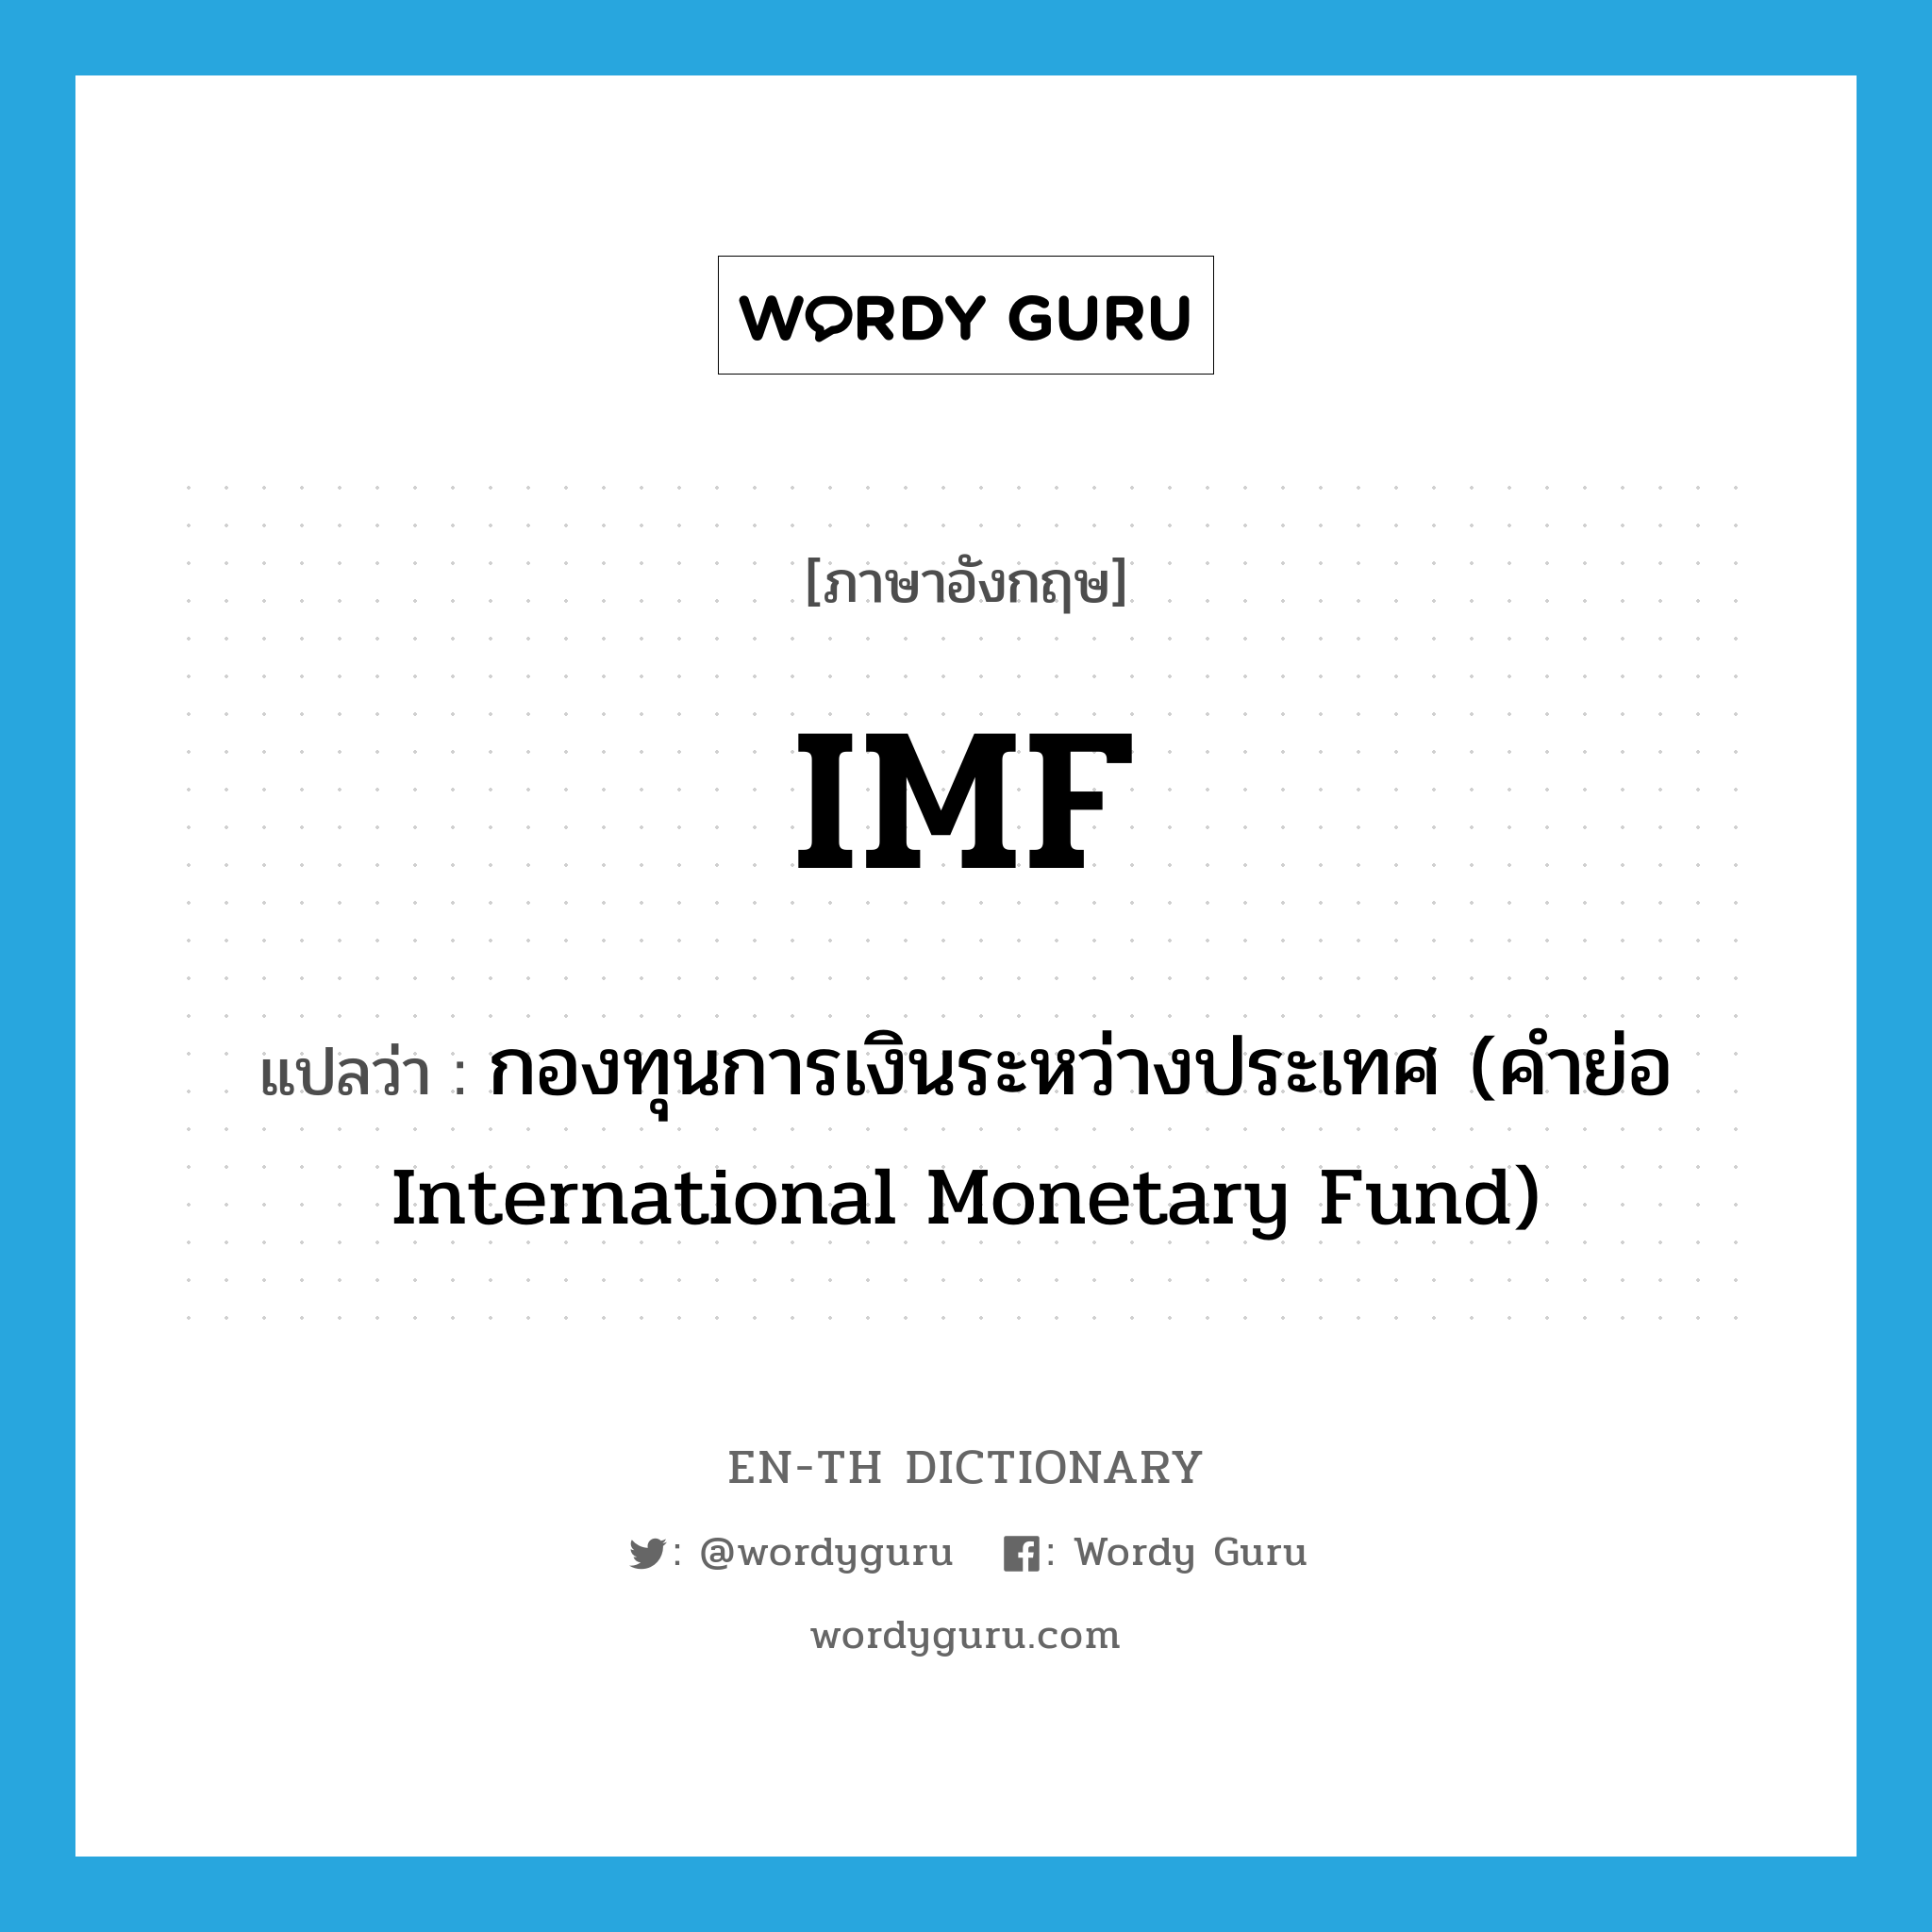 กองทุนการเงินระหว่างประเทศ (คำย่อ International Monetary Fund) ภาษาอังกฤษ?, คำศัพท์ภาษาอังกฤษ กองทุนการเงินระหว่างประเทศ (คำย่อ International Monetary Fund) แปลว่า IMF ประเภท ABBR หมวด ABBR